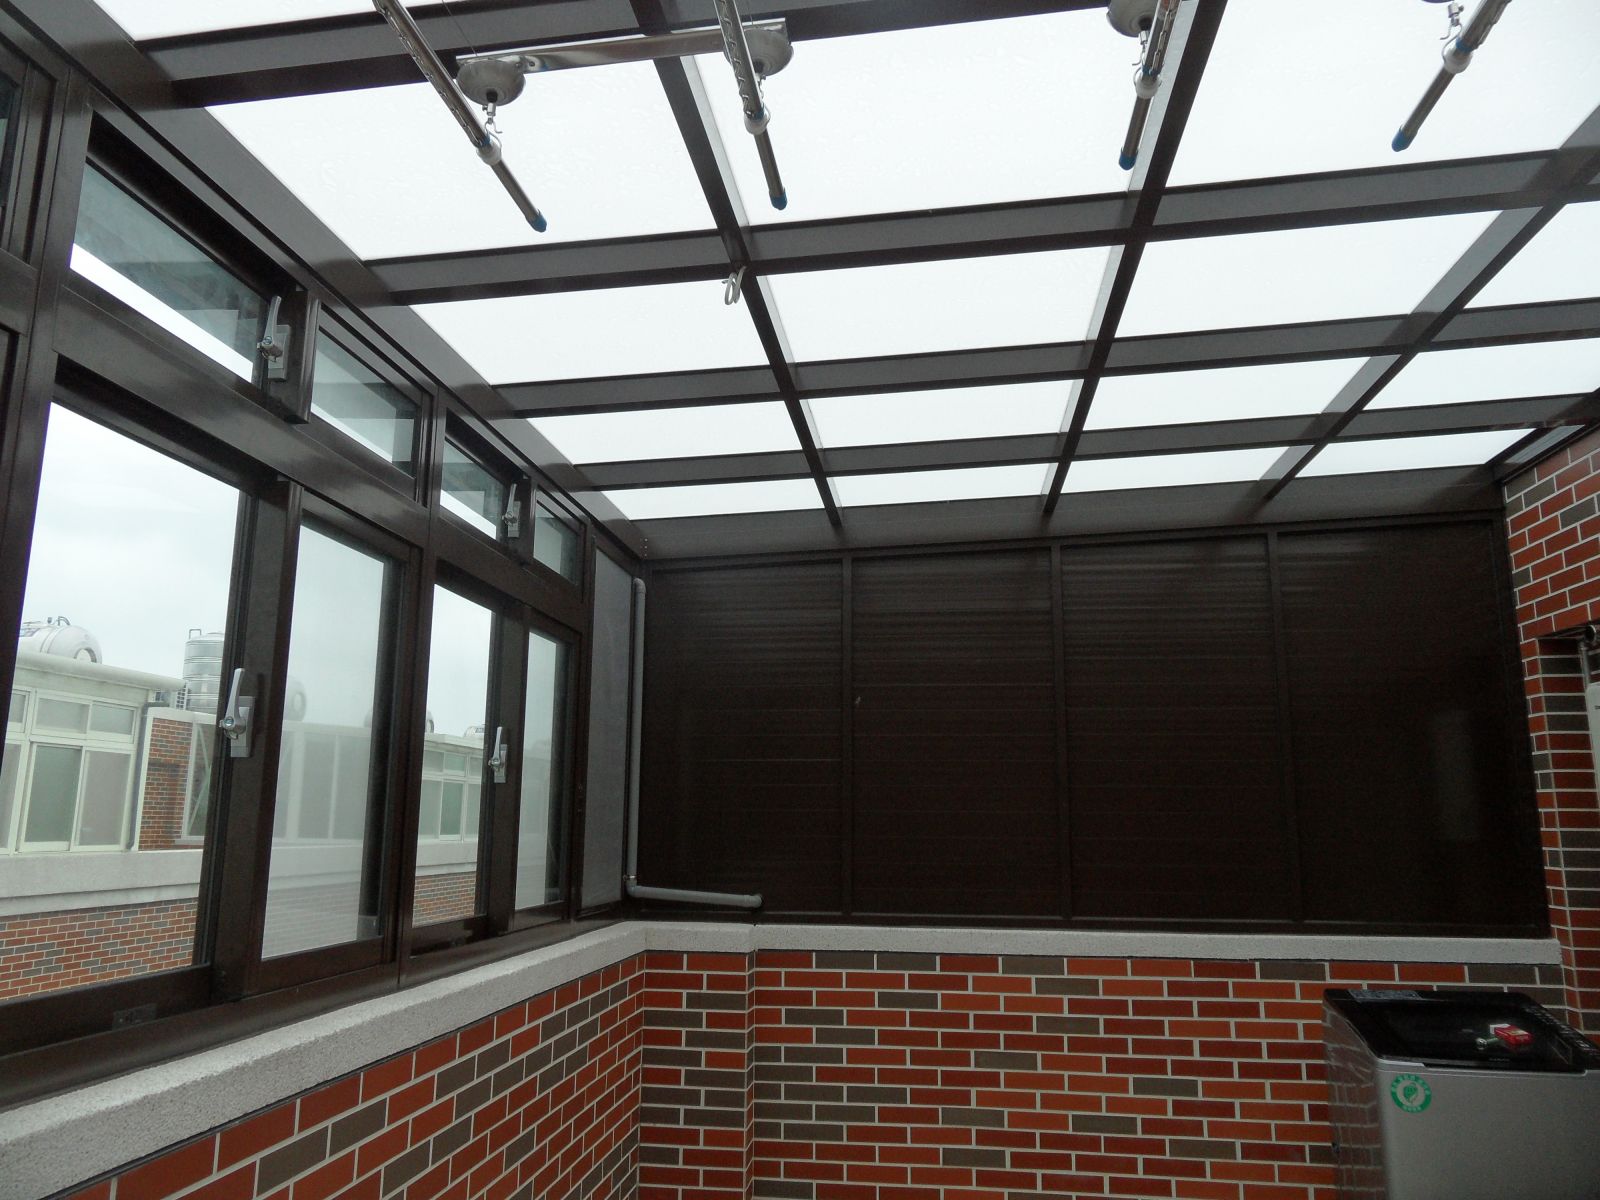 屋頂玻璃採用5+5膠合白膜玻璃,正面2組活動百葉窗搭配3組氣密窗